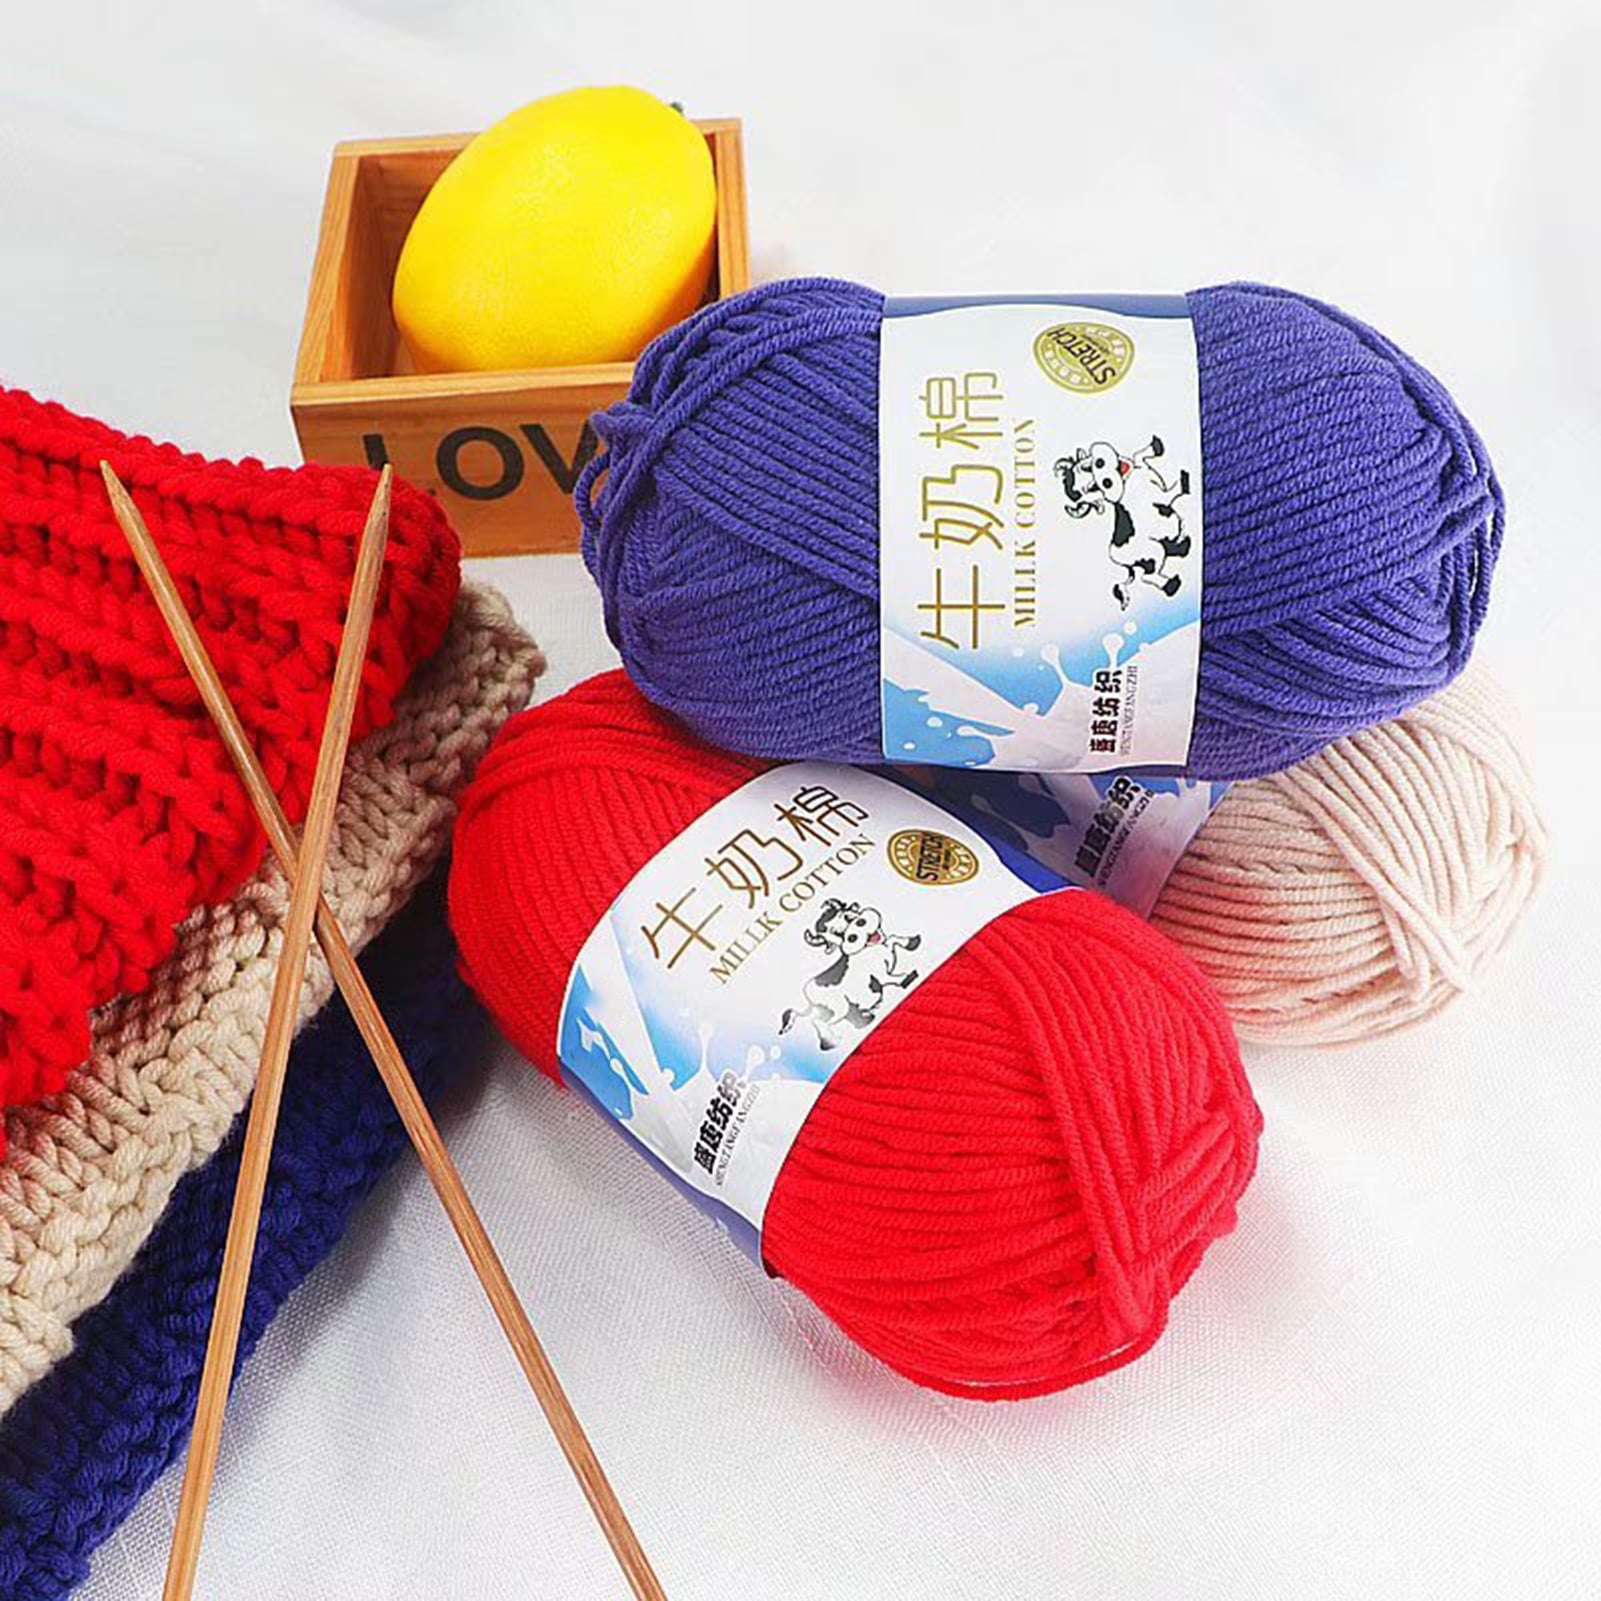 1 Roll 5-strand Wool Yarn Soft Warm DIY Beginner Needlework Hand Knitting  Crochet Yarn Ball for Sewing Shop